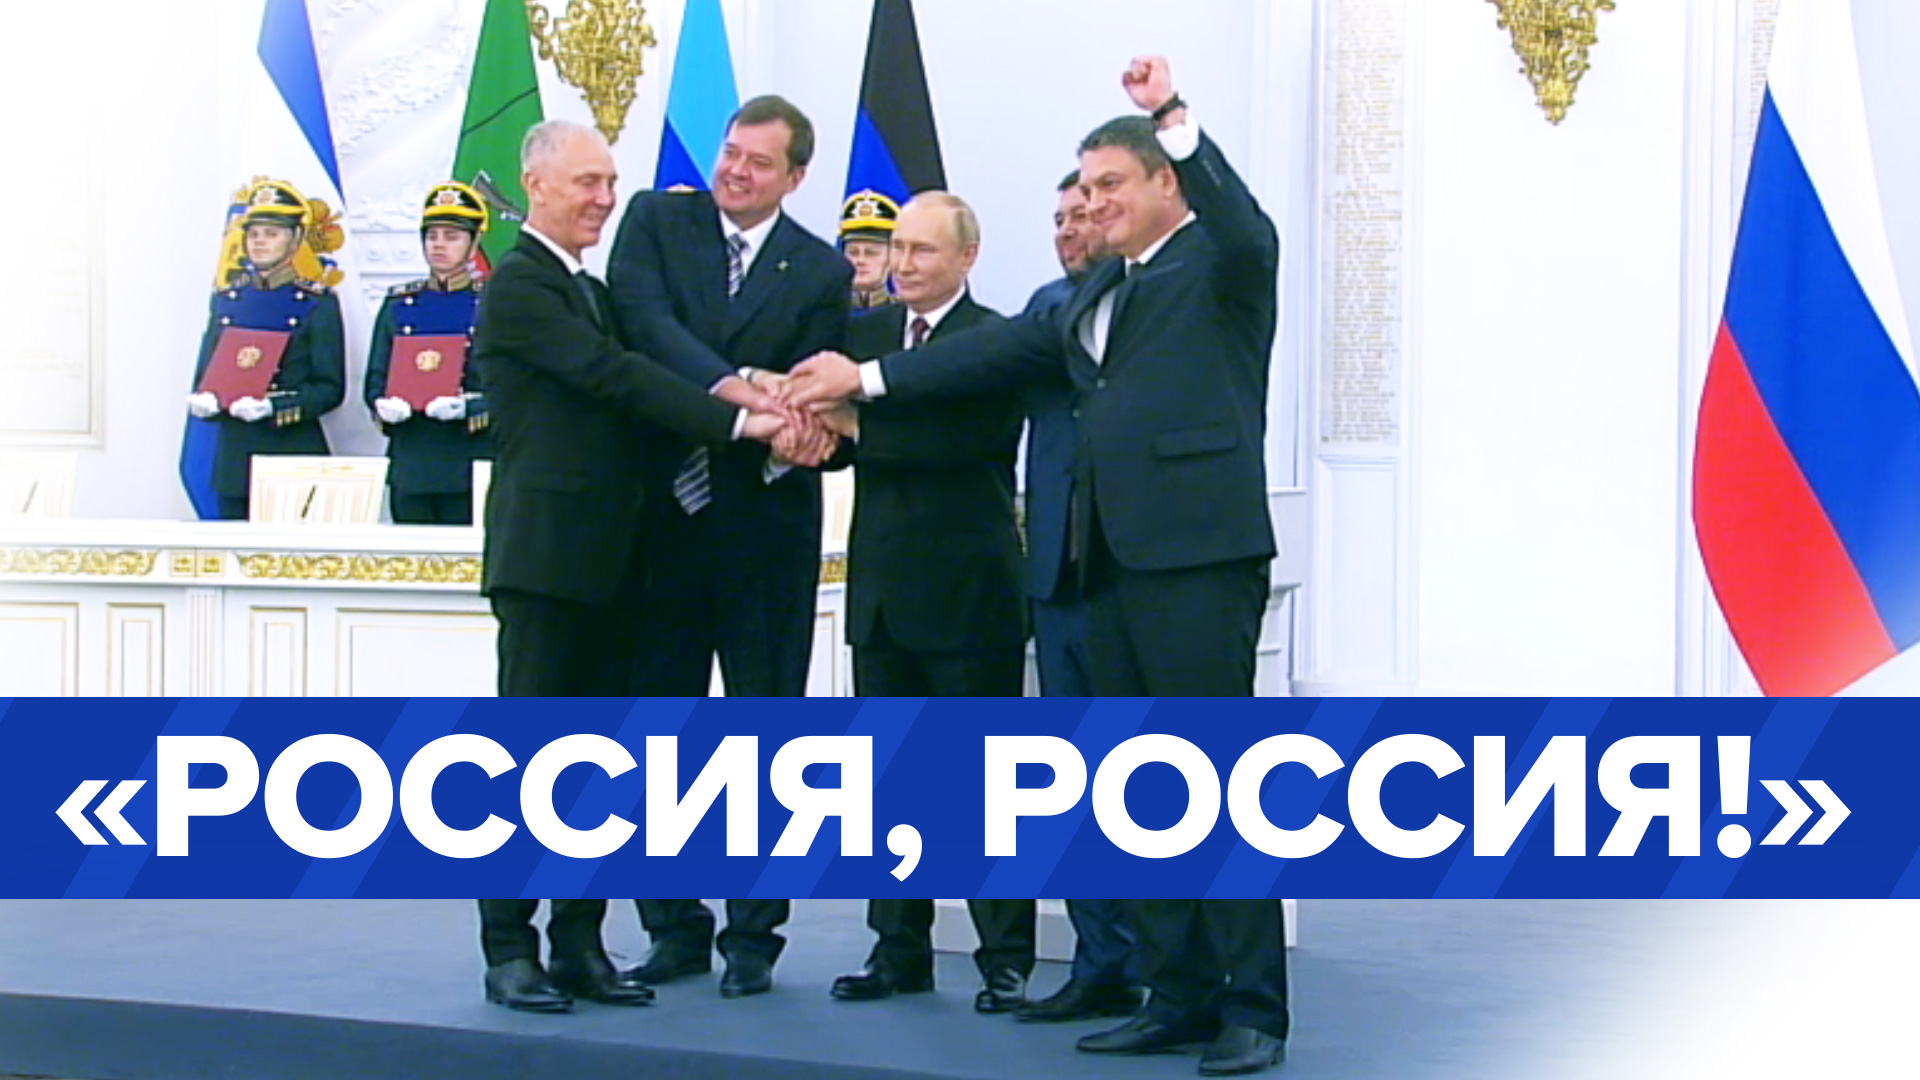 Путин проскандировал «Россия!» вместе с главами новых субъектов РФ